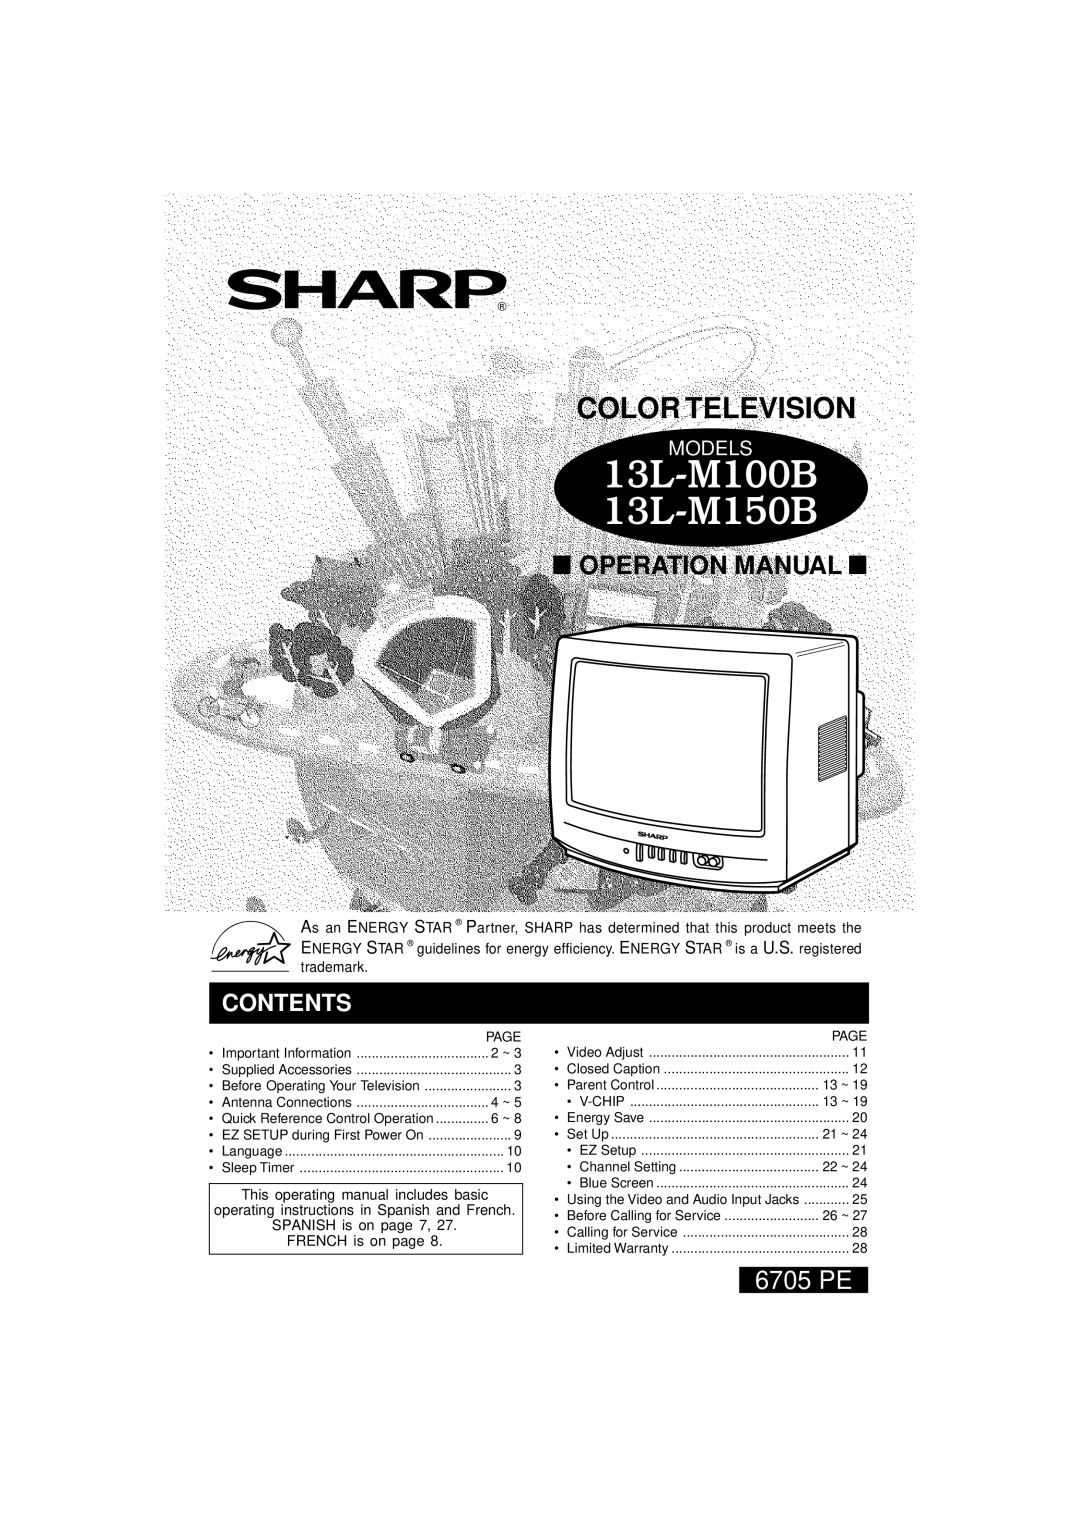 Sharp operation manual L Operation Manual L, 13L-M100B 13L-M150B, Color Television, 6705 PE, Contents, Models 